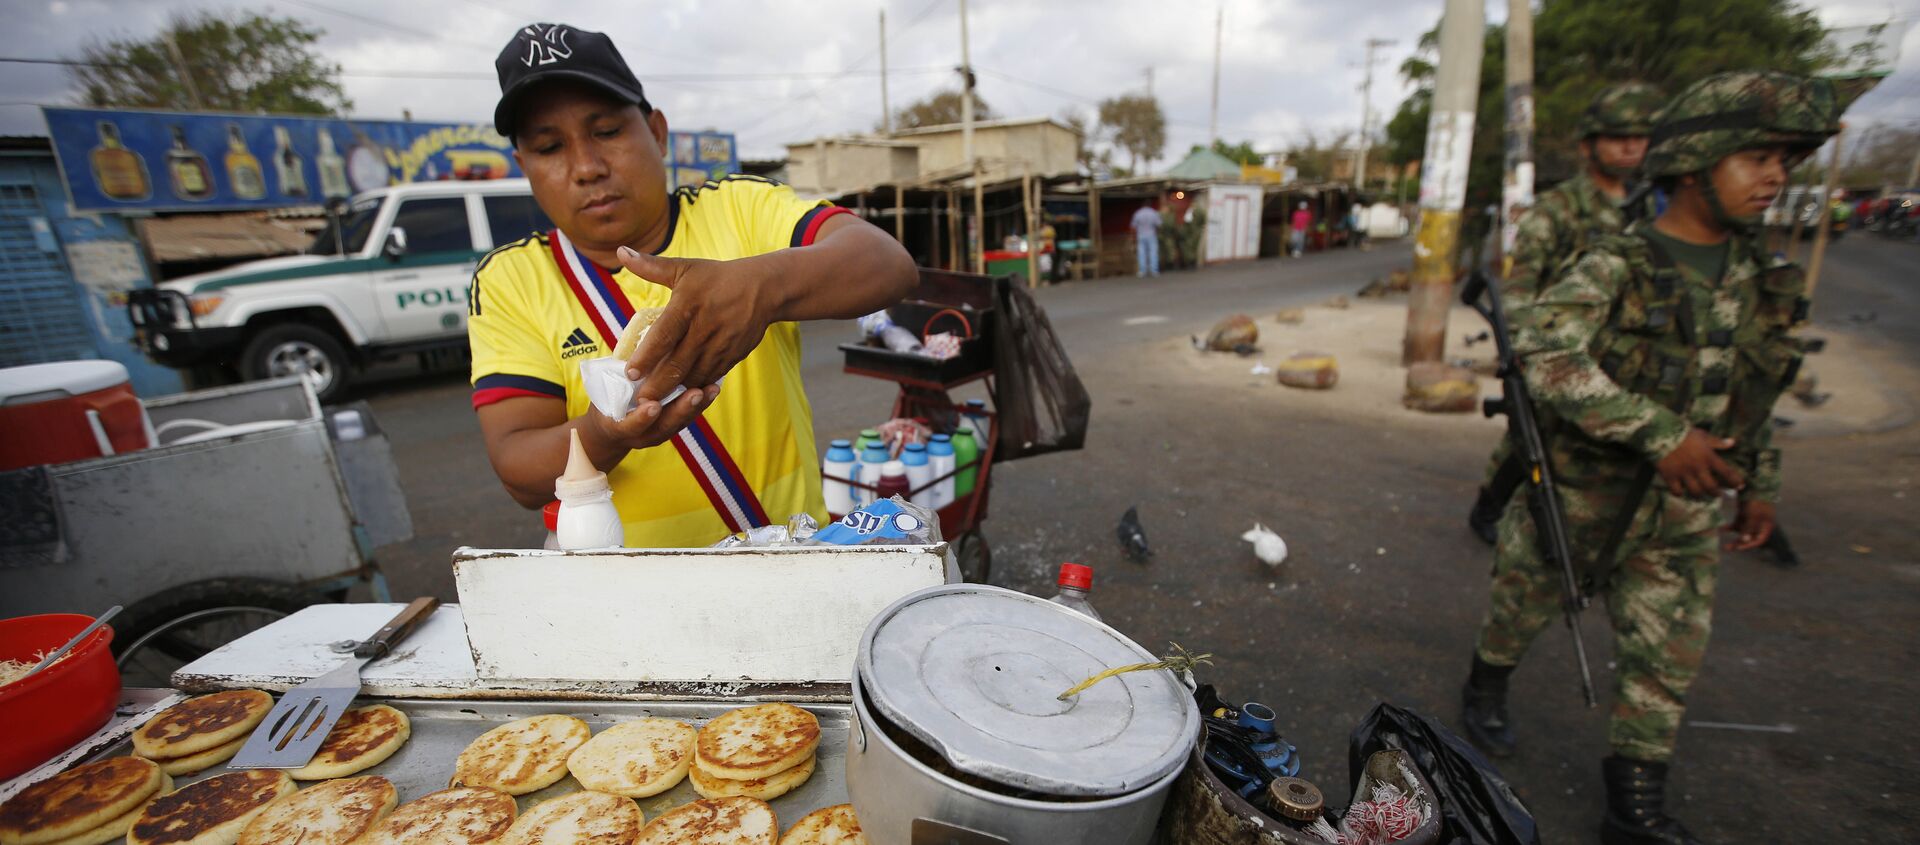 Negociante colombiano vende comida cerca la frontera entre Colombia y Venezuela - Sputnik Mundo, 1920, 19.10.2015